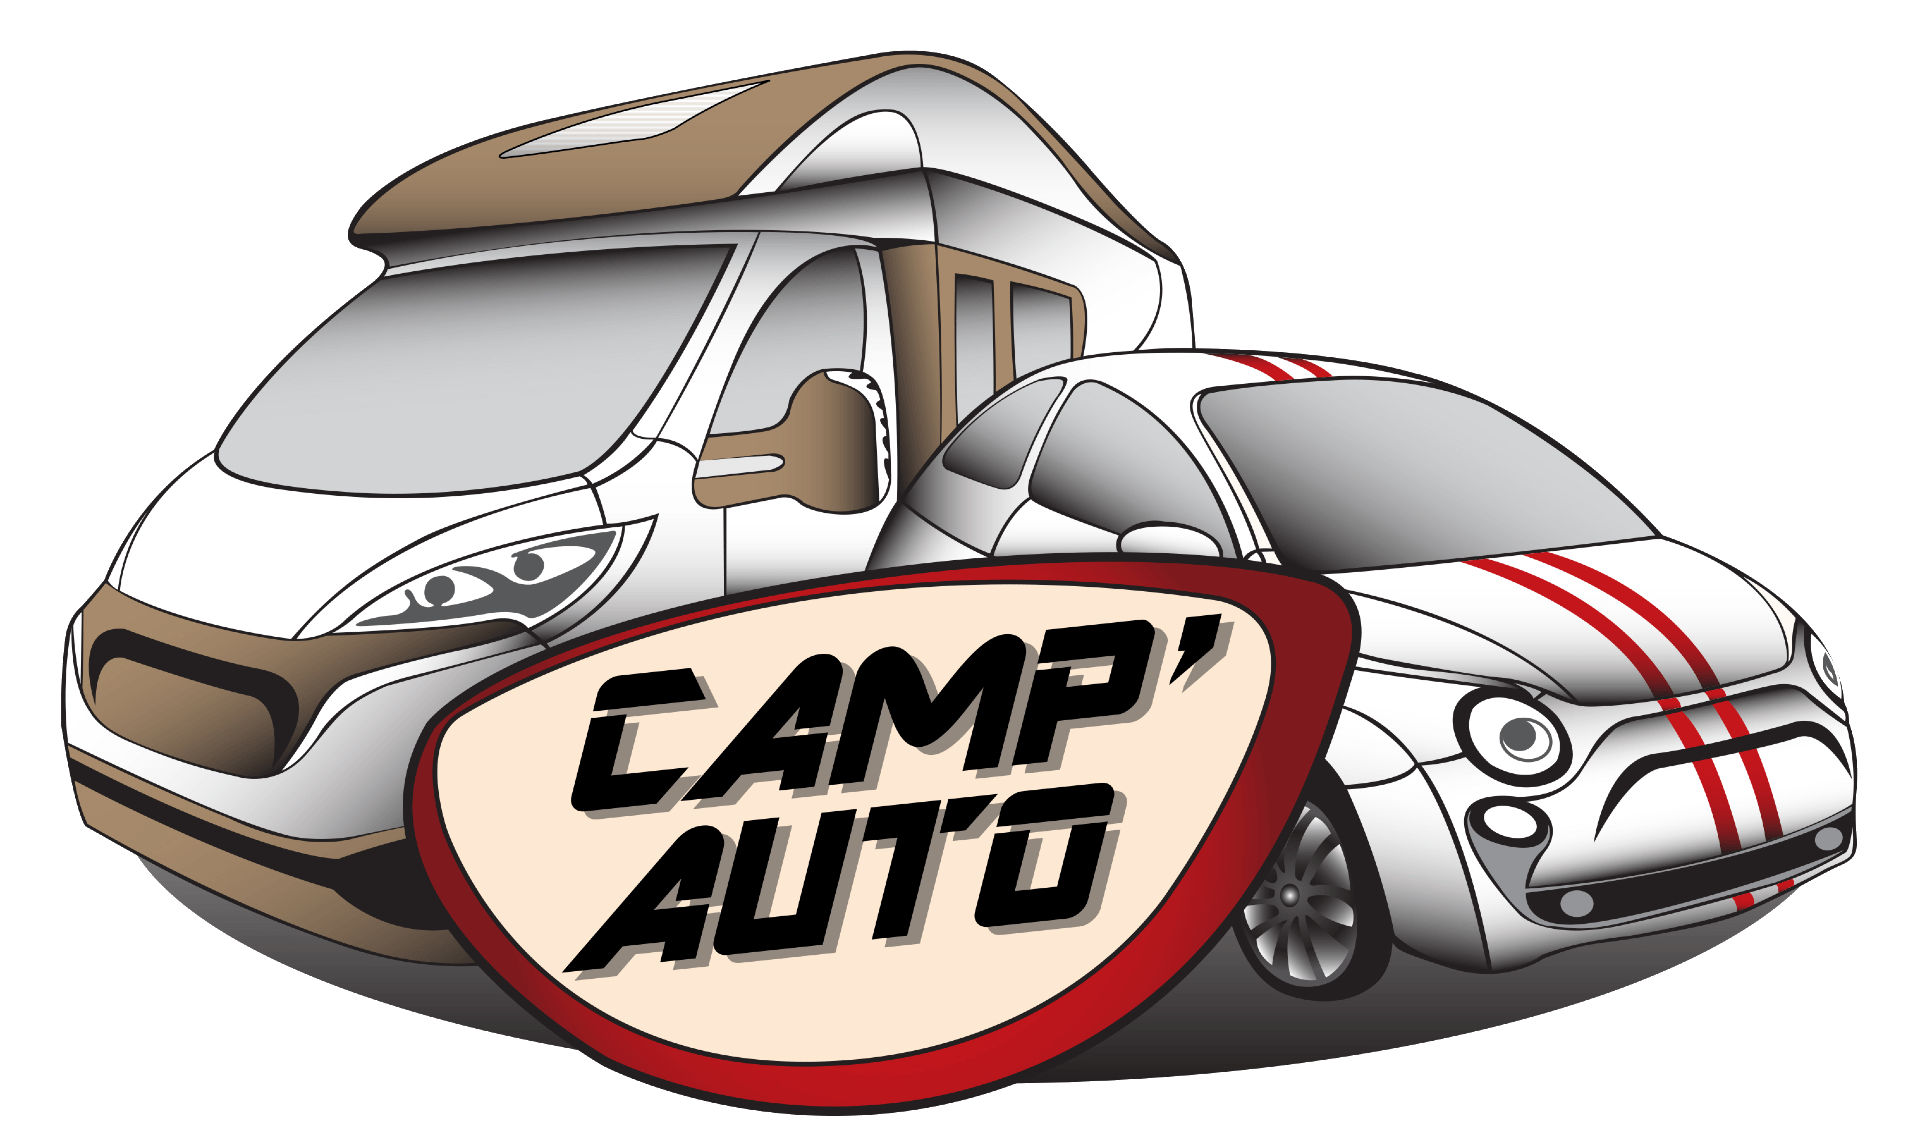 Camp'Auto